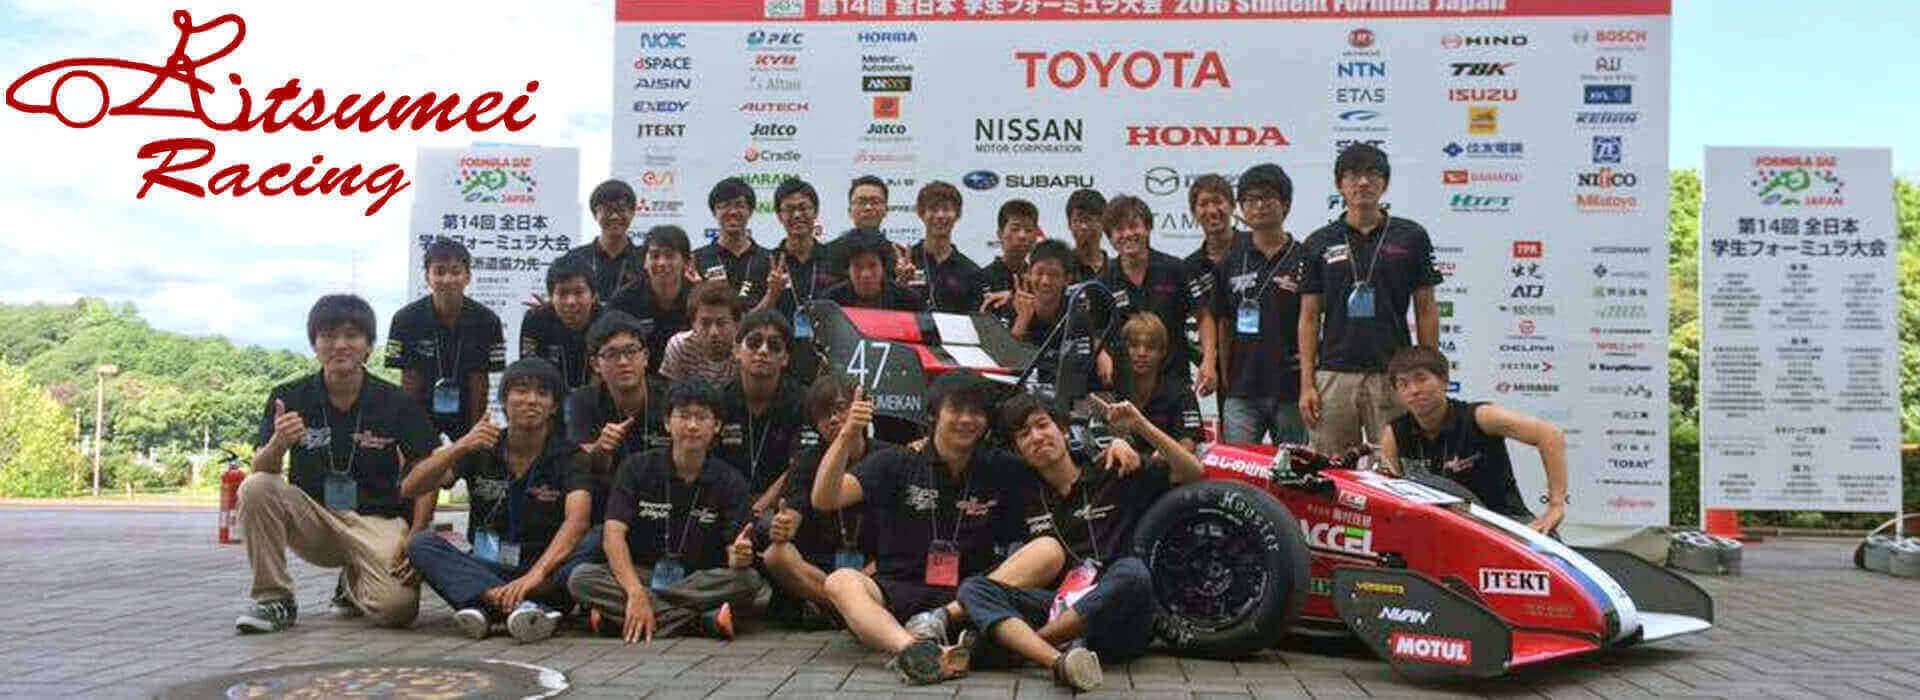 立命館大学プロジェクト団体 Ritsumei Racing【Vol.1】